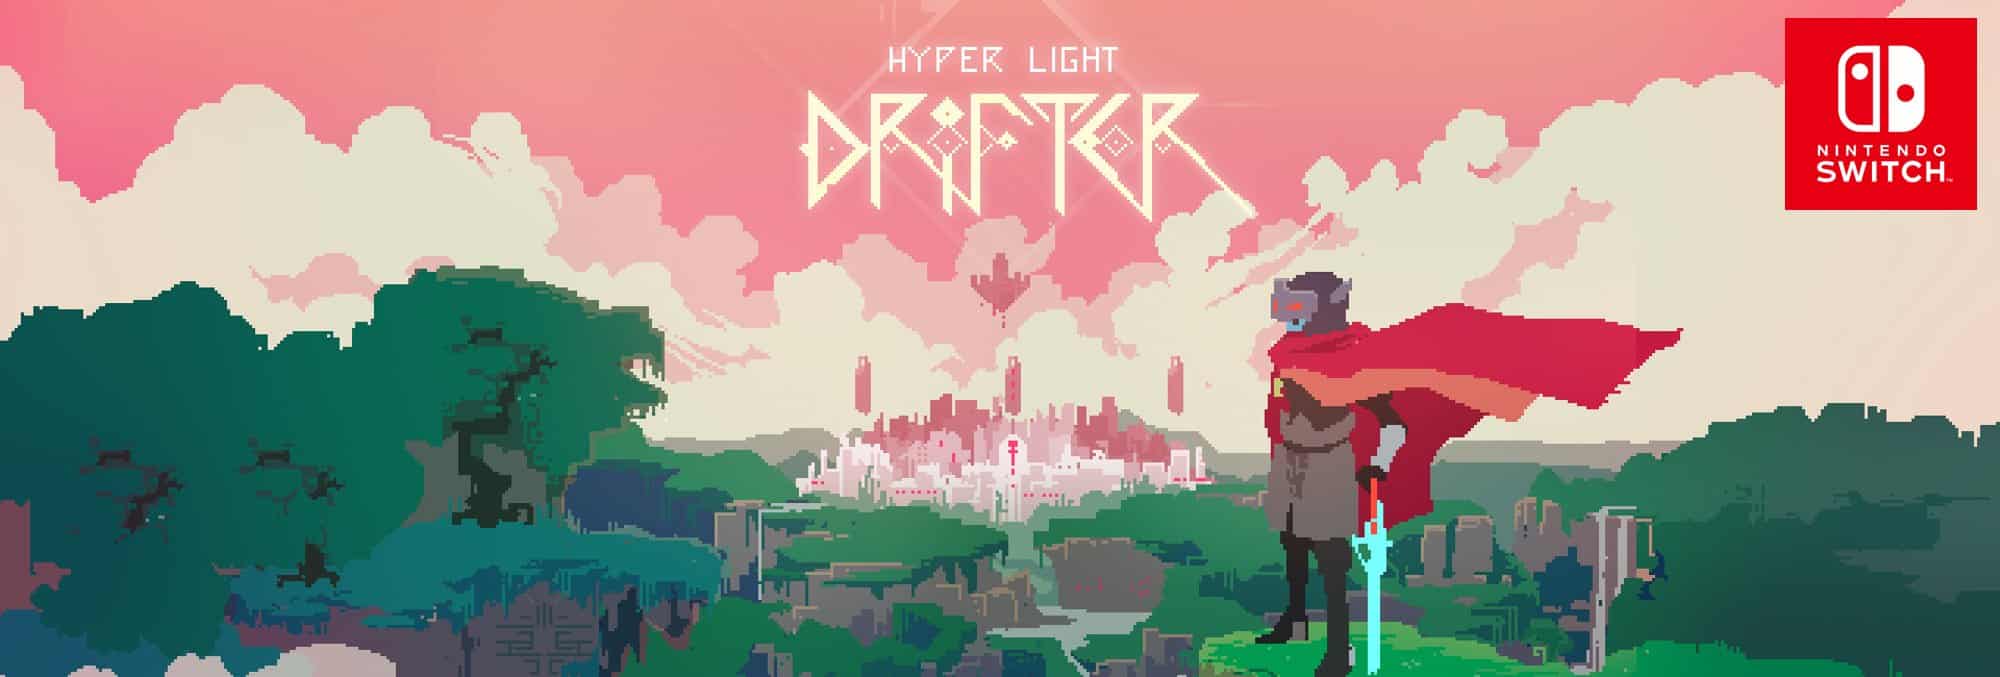 hyper light drifter map at start